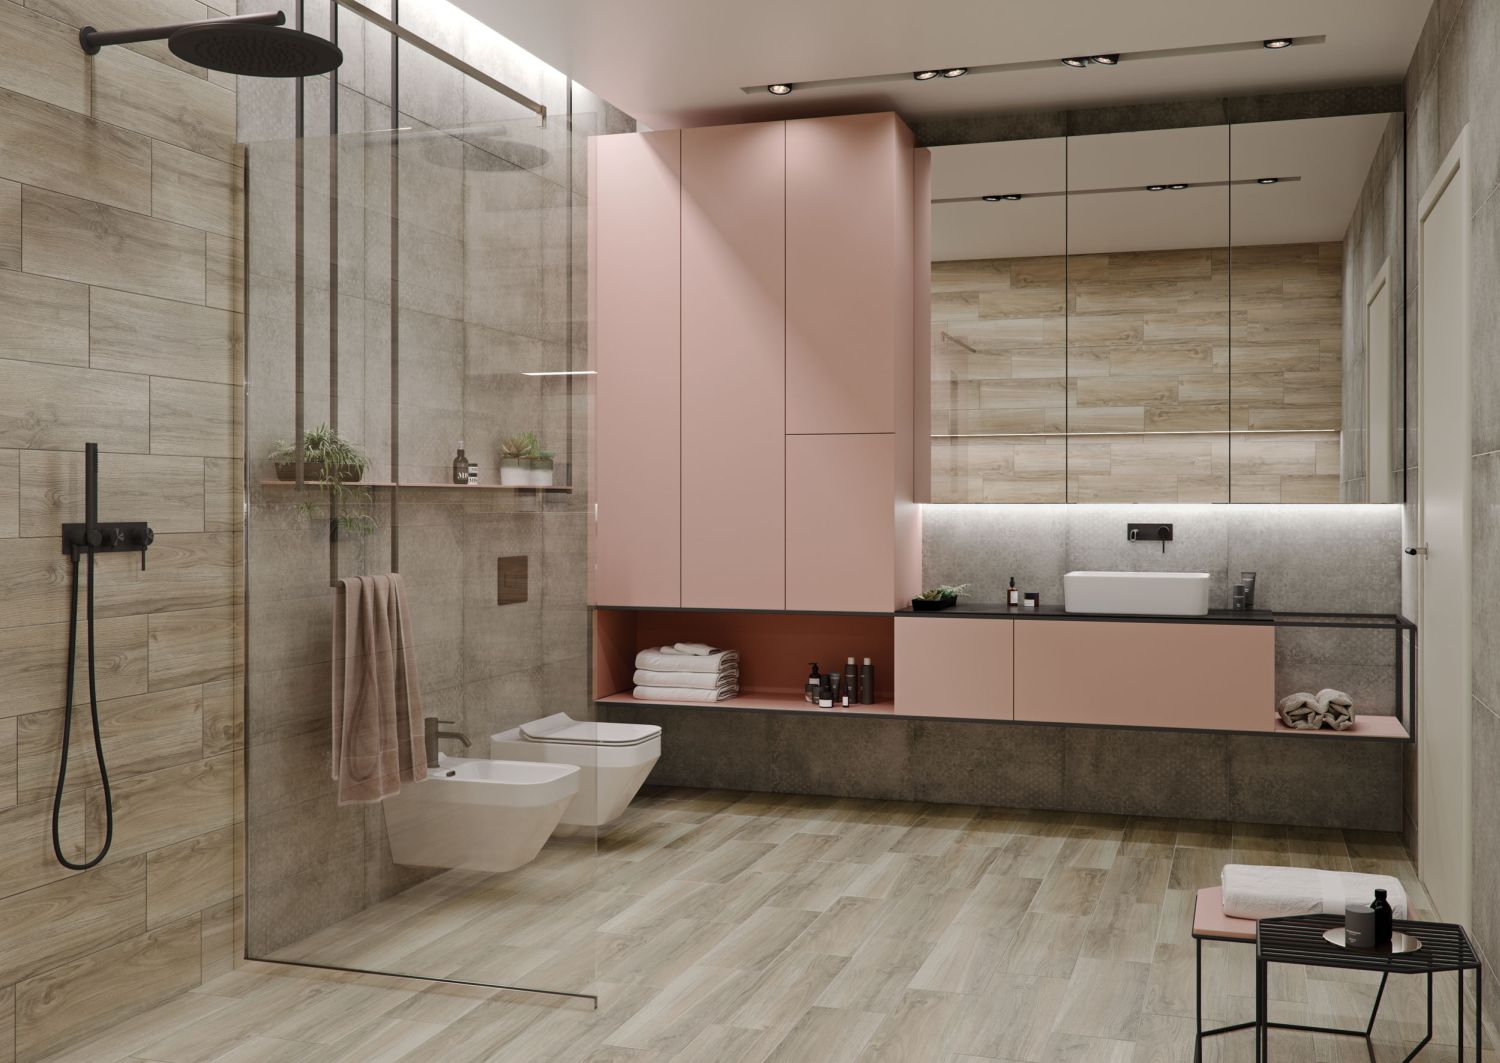 różowa łazienka, różowa łazienka aranżacje, różowe płytki do łazienki, różowe dodatki do łazienki